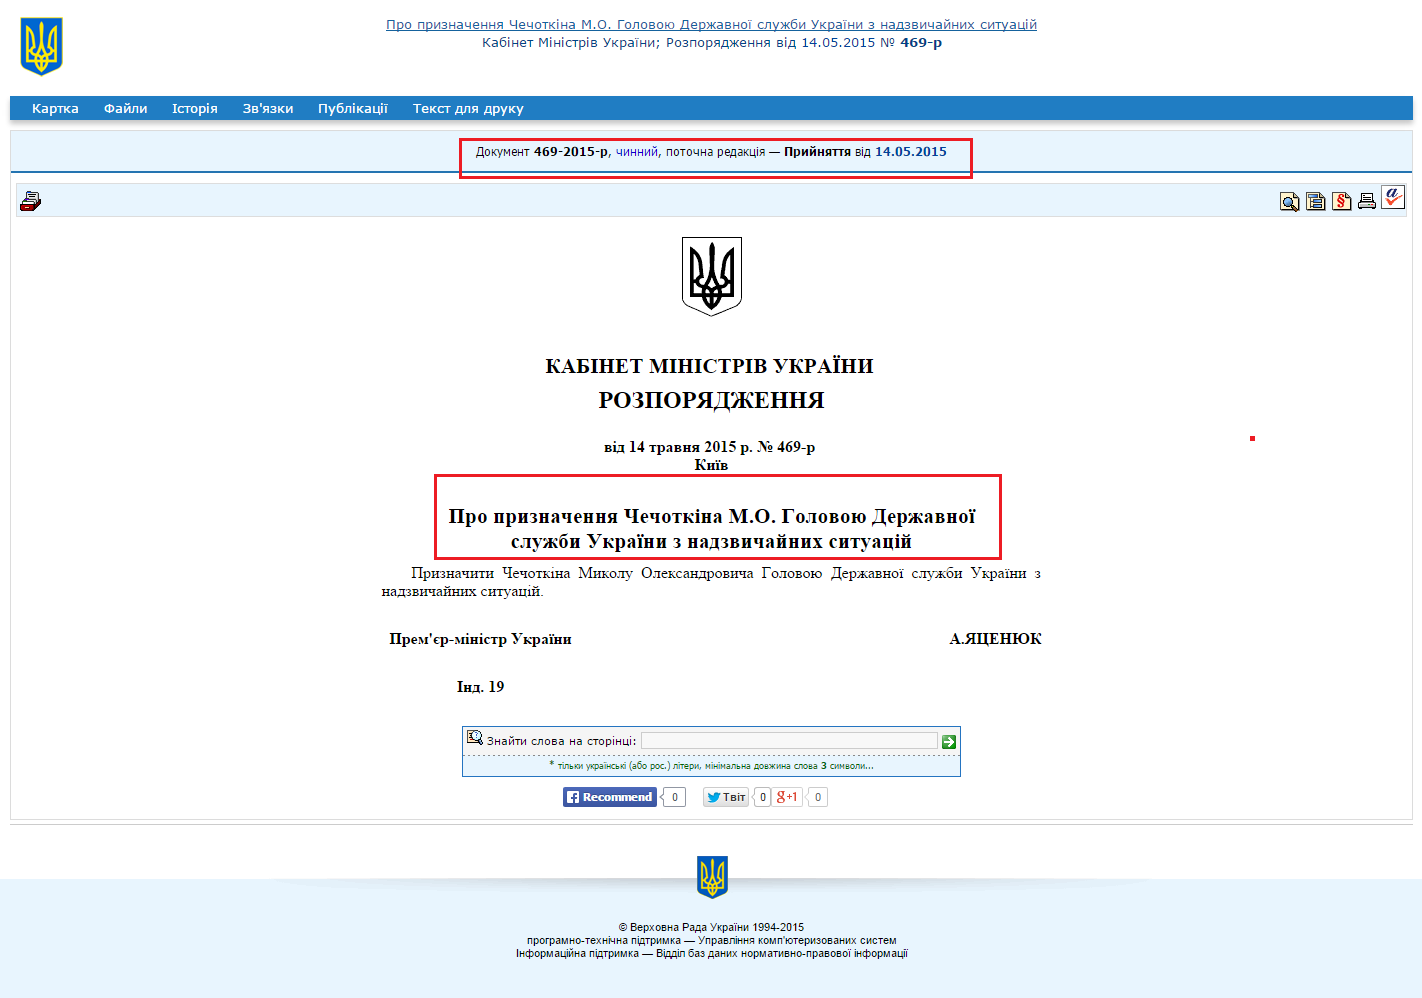 http://zakon4.rada.gov.ua/laws/show/469-2015-%D1%80